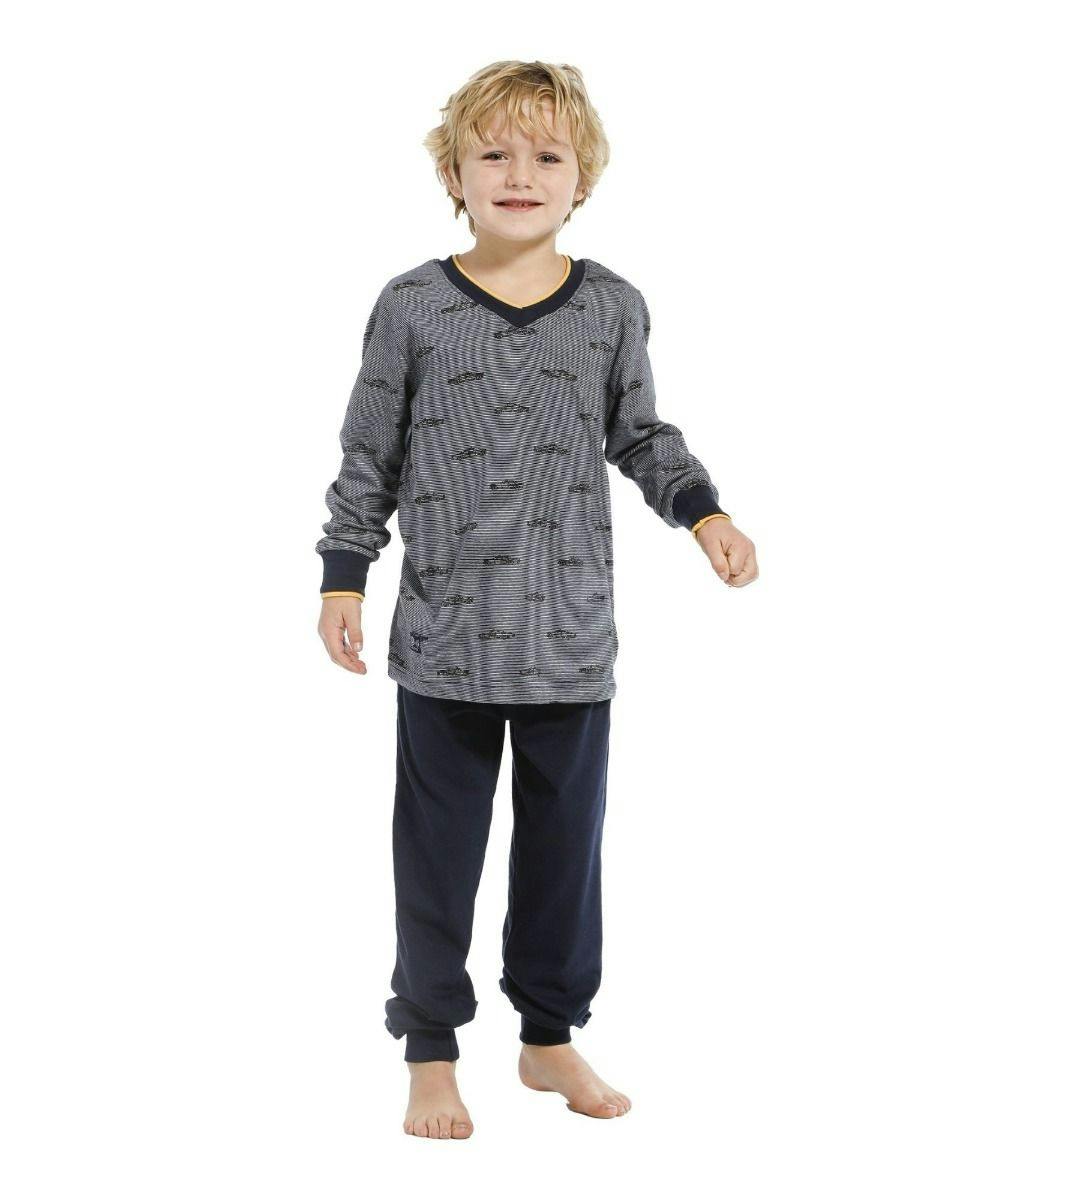 Resoneer Bouwen Van hen Pastunette pyjama lange broek Kids Power Pyjama J 24212-606-2-313